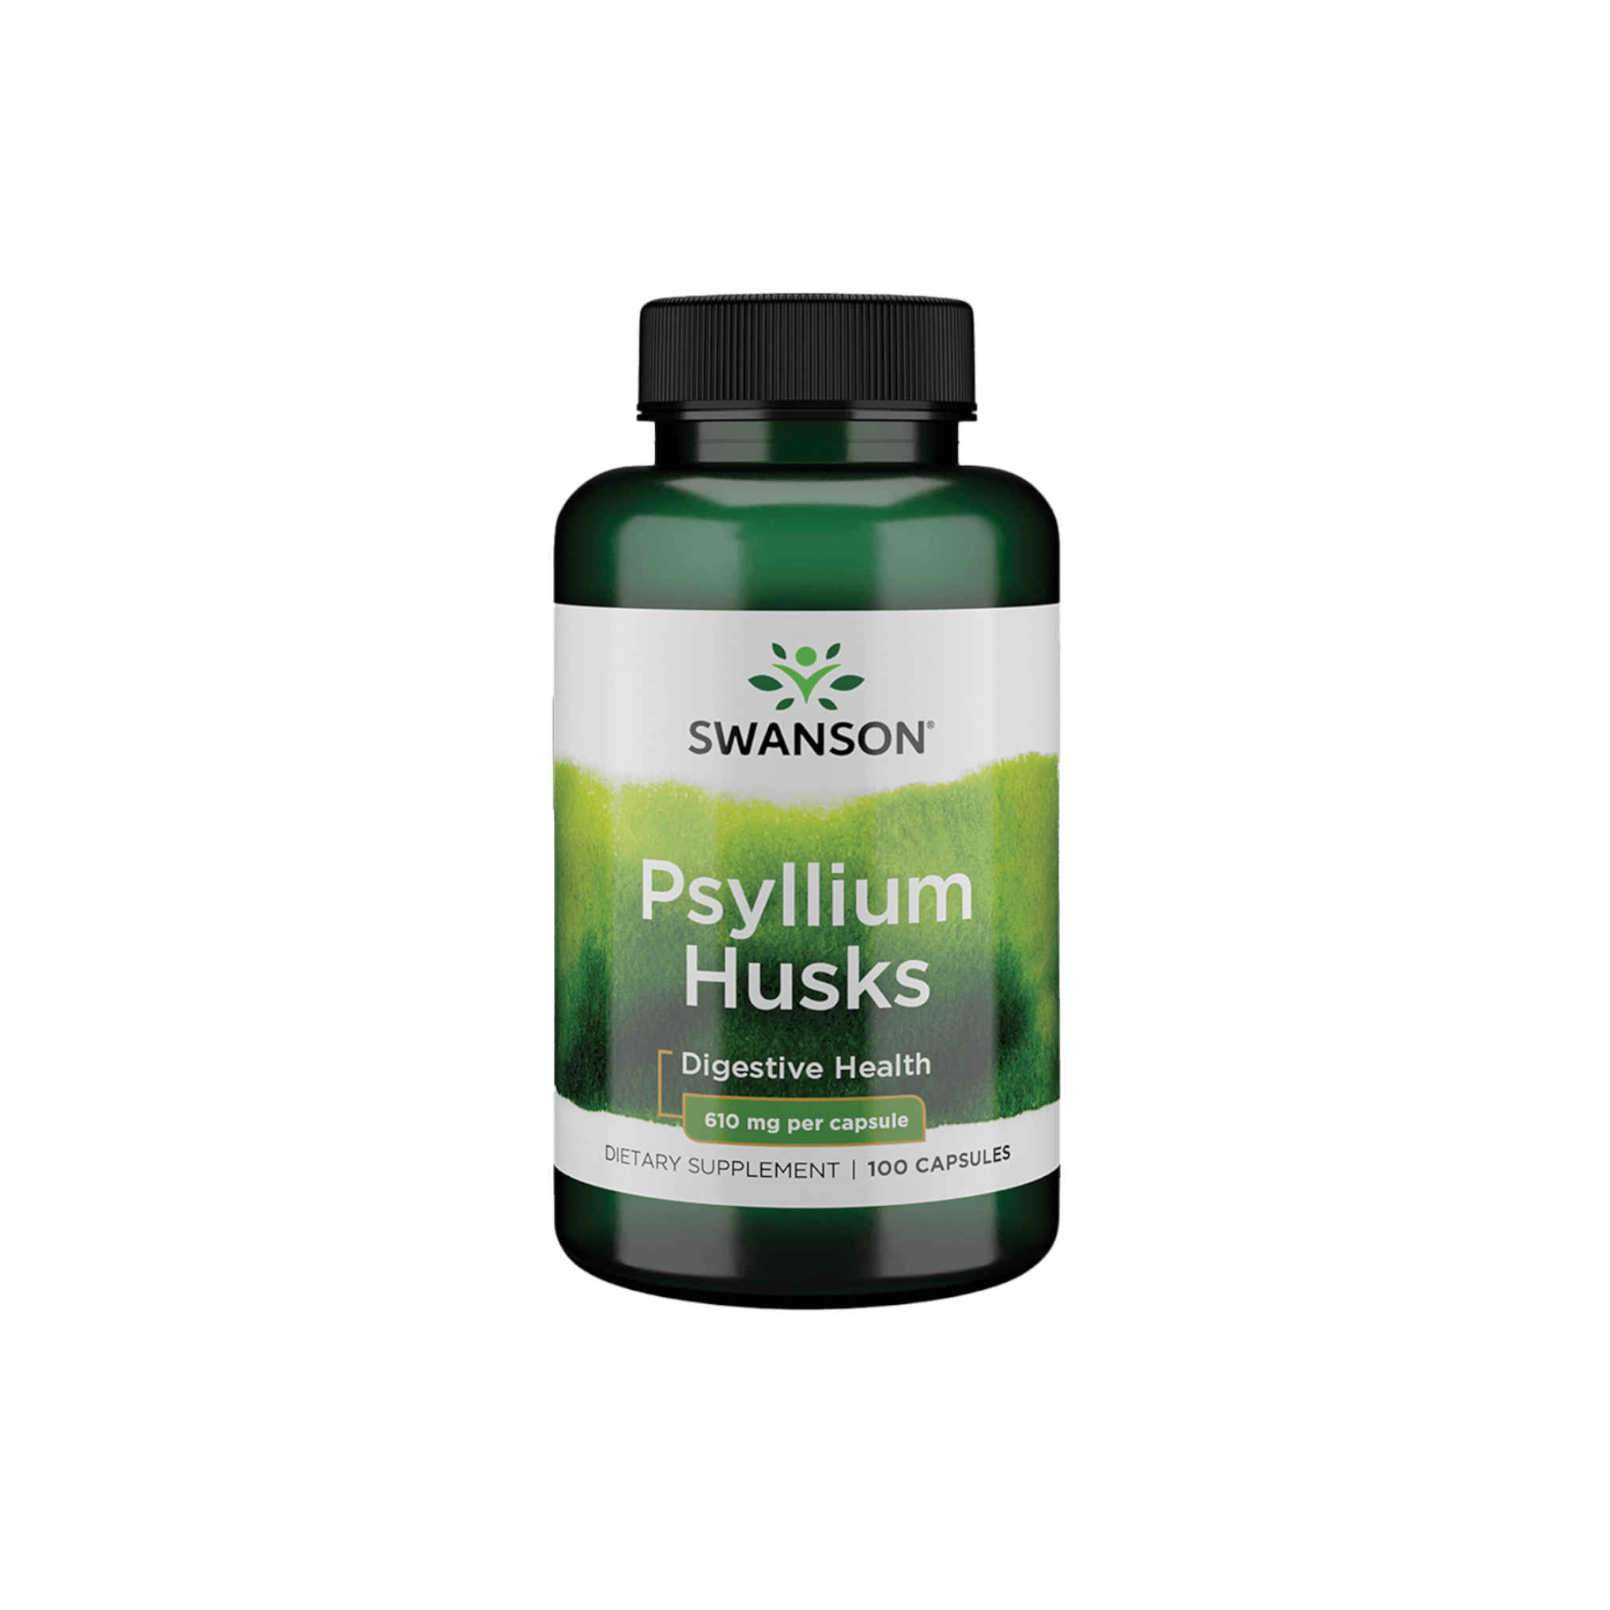 Swanson Psyllium Capsules 610mg